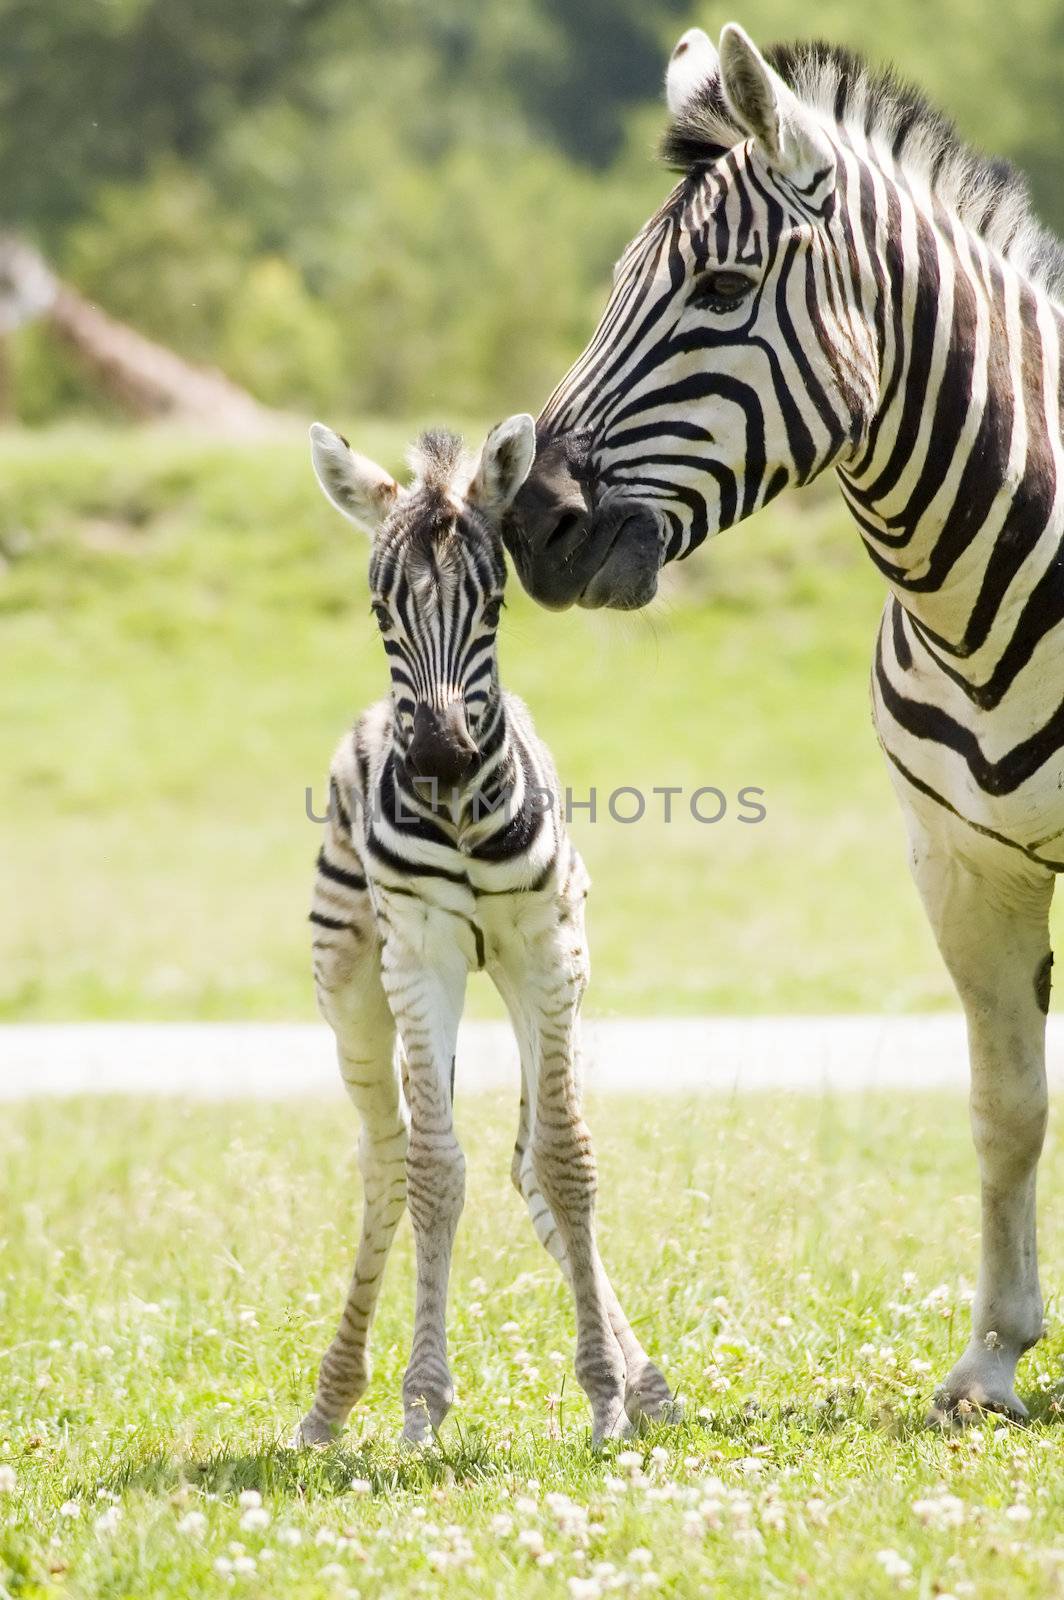 Zebra by vladikpod